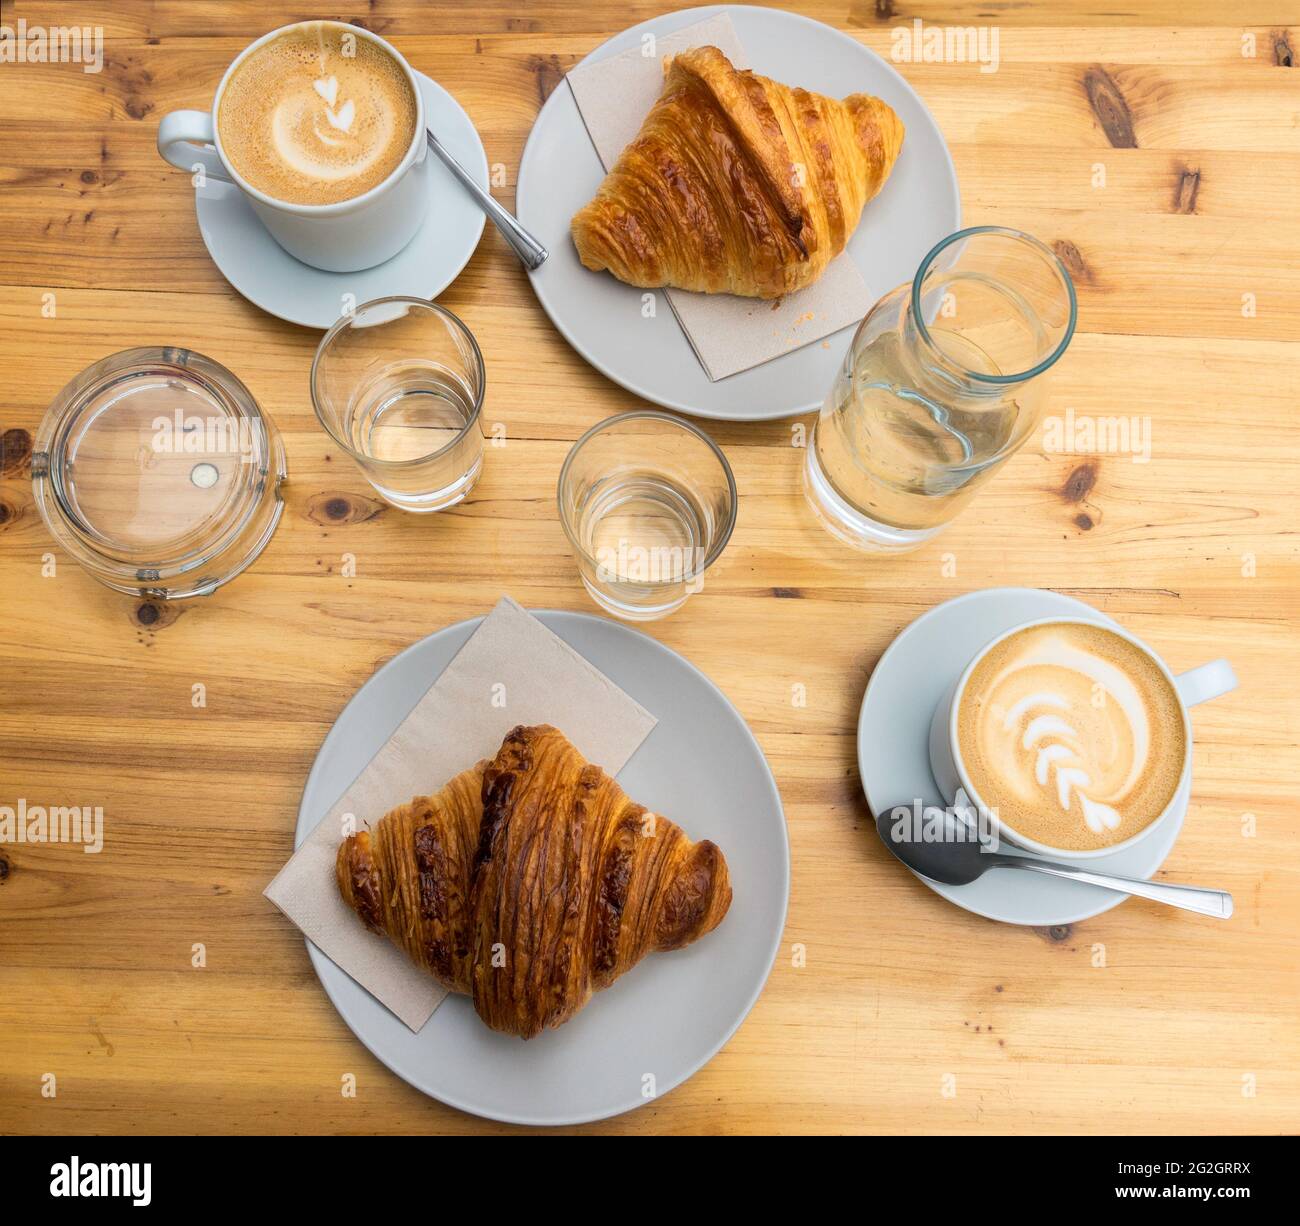 Des tasses de café latte et des croissants sur une table en bois Banque D'Images